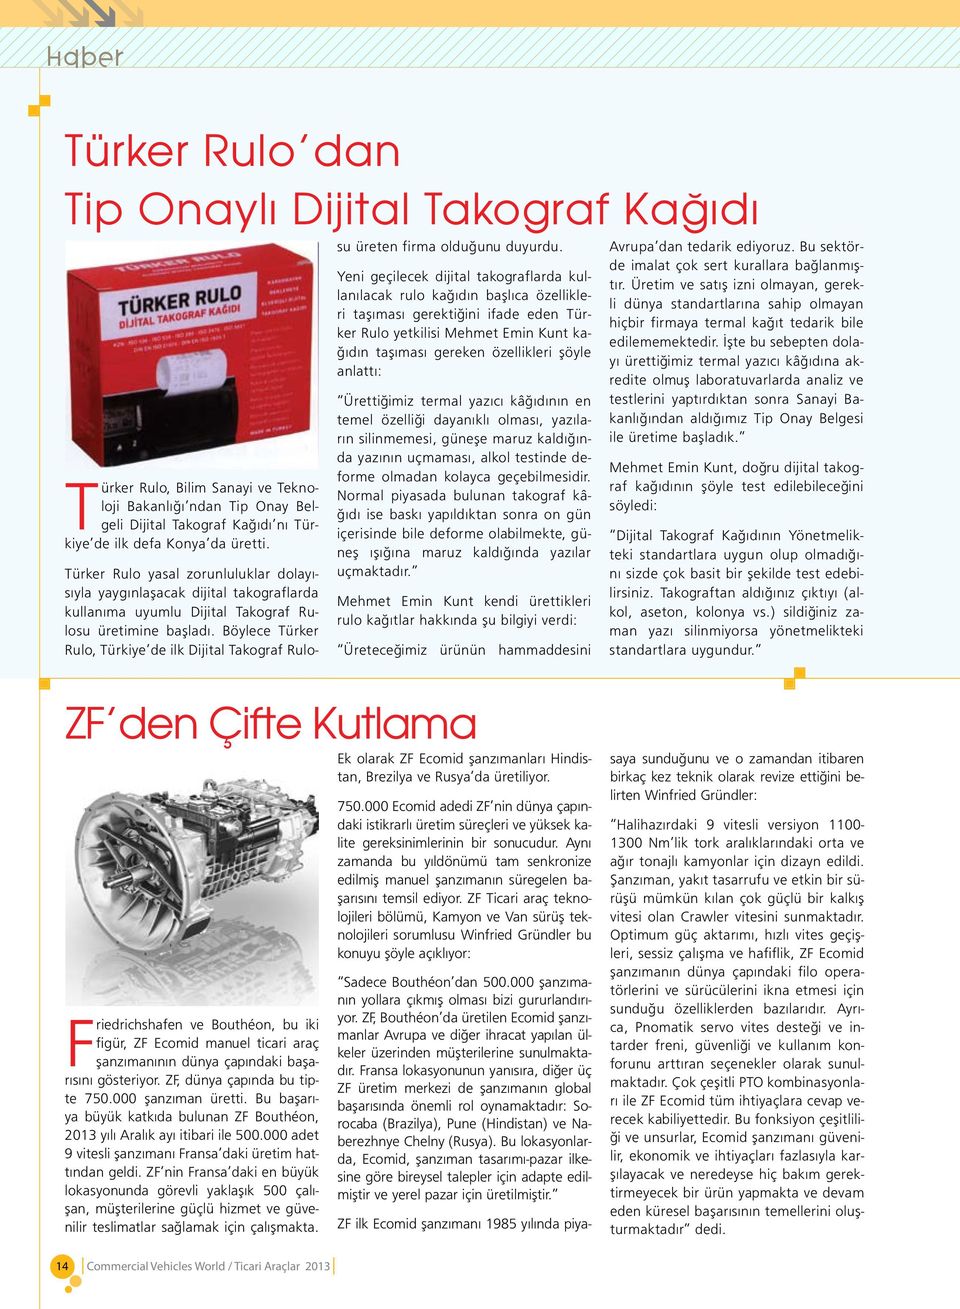 Böylece Türker Rulo, Türkiye de ilk Dijital Takograf Rulosu üreten firma olduğunu duyurdu.